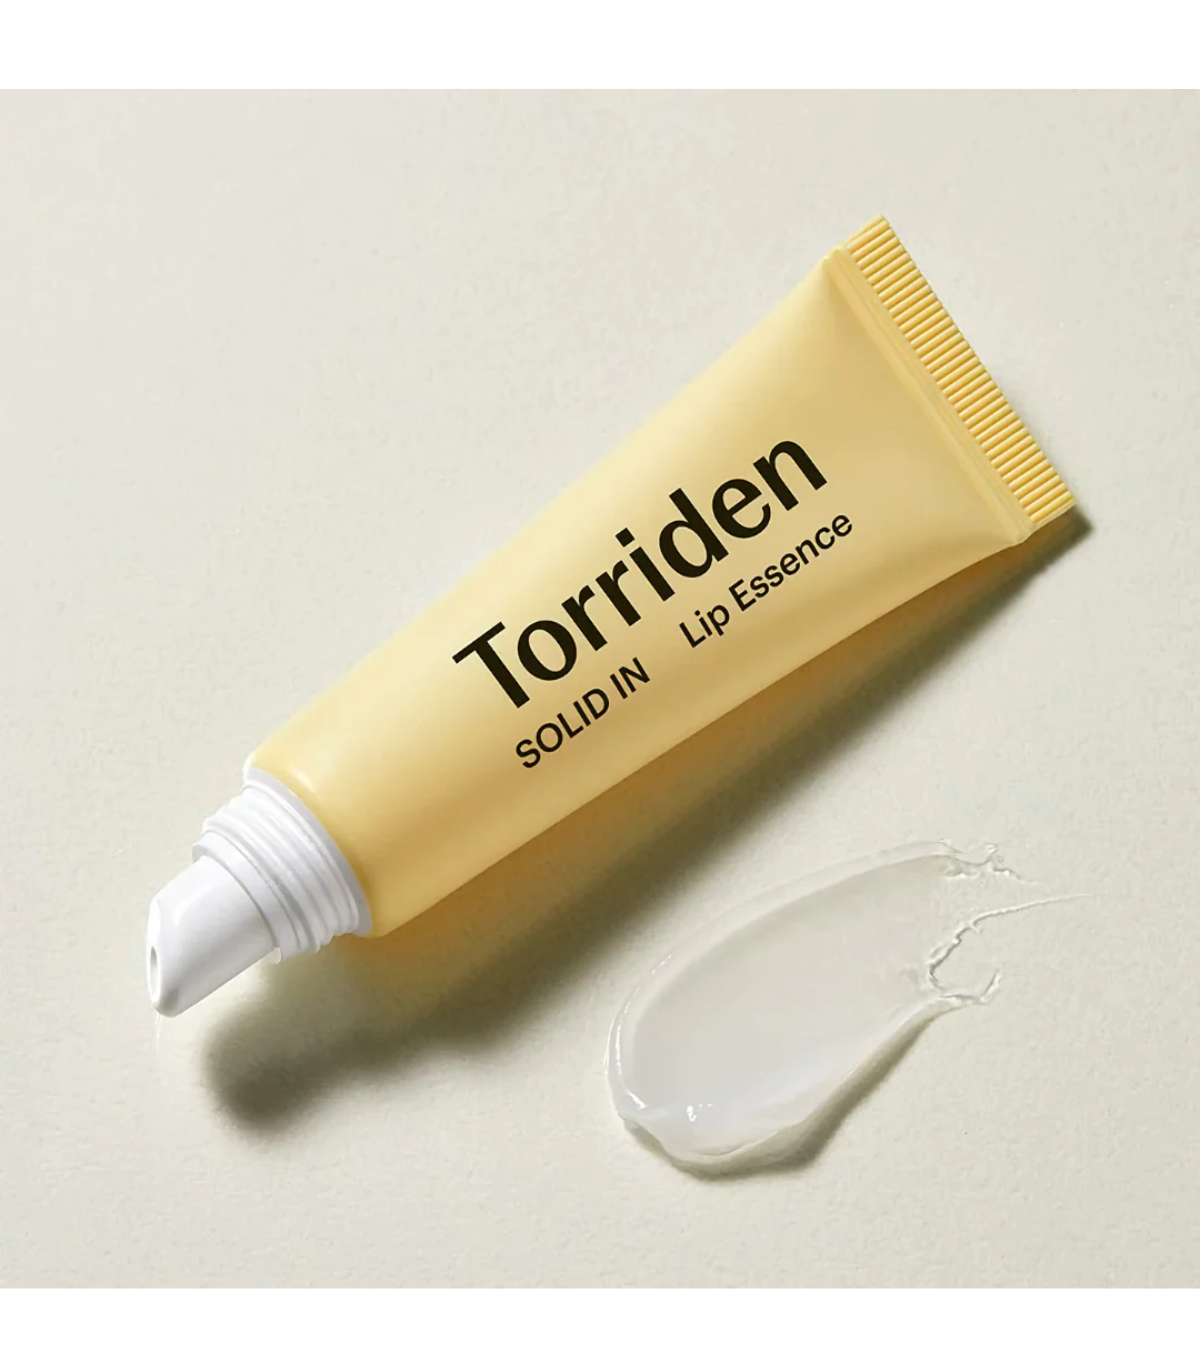 Torriden - SOLID IN Ceramide Lip Essence, Torriden | Meka.sk